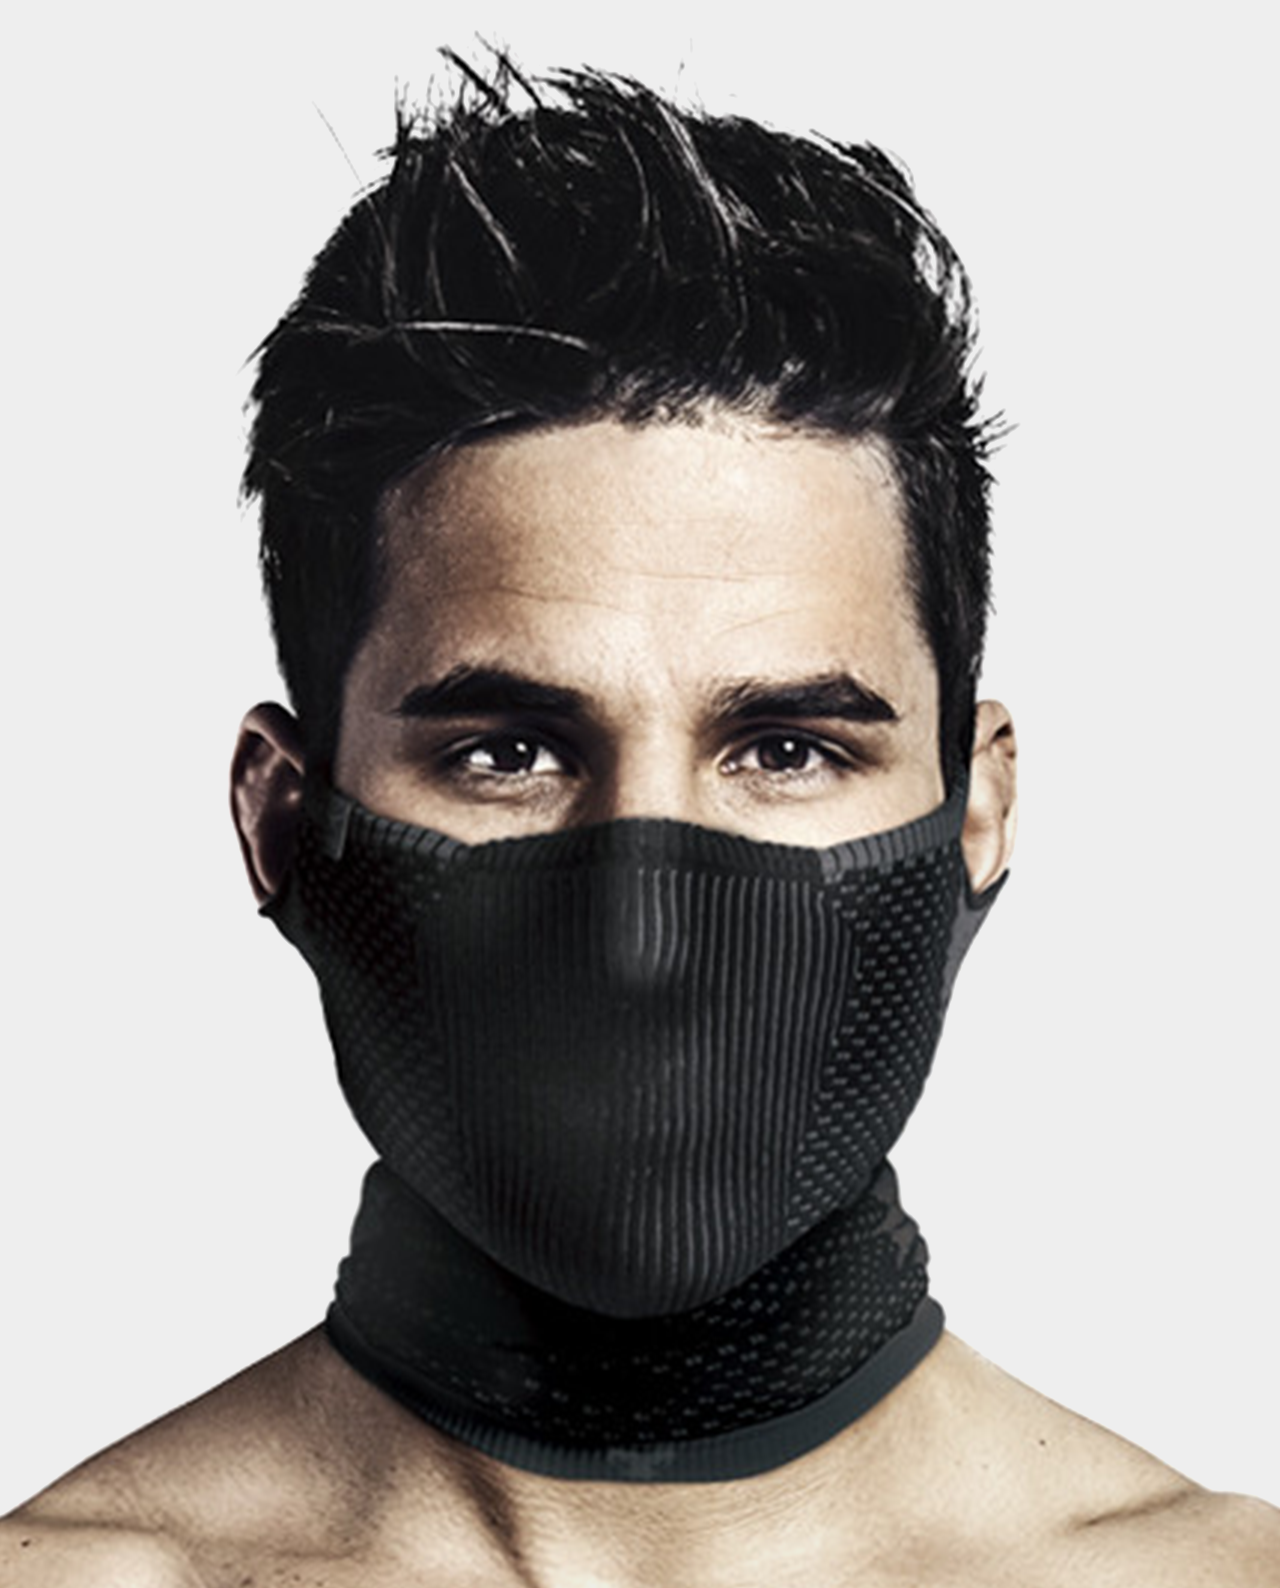 Masca pentru sportivi Naroo Mask F5 cu filtrare particule – diverse modele